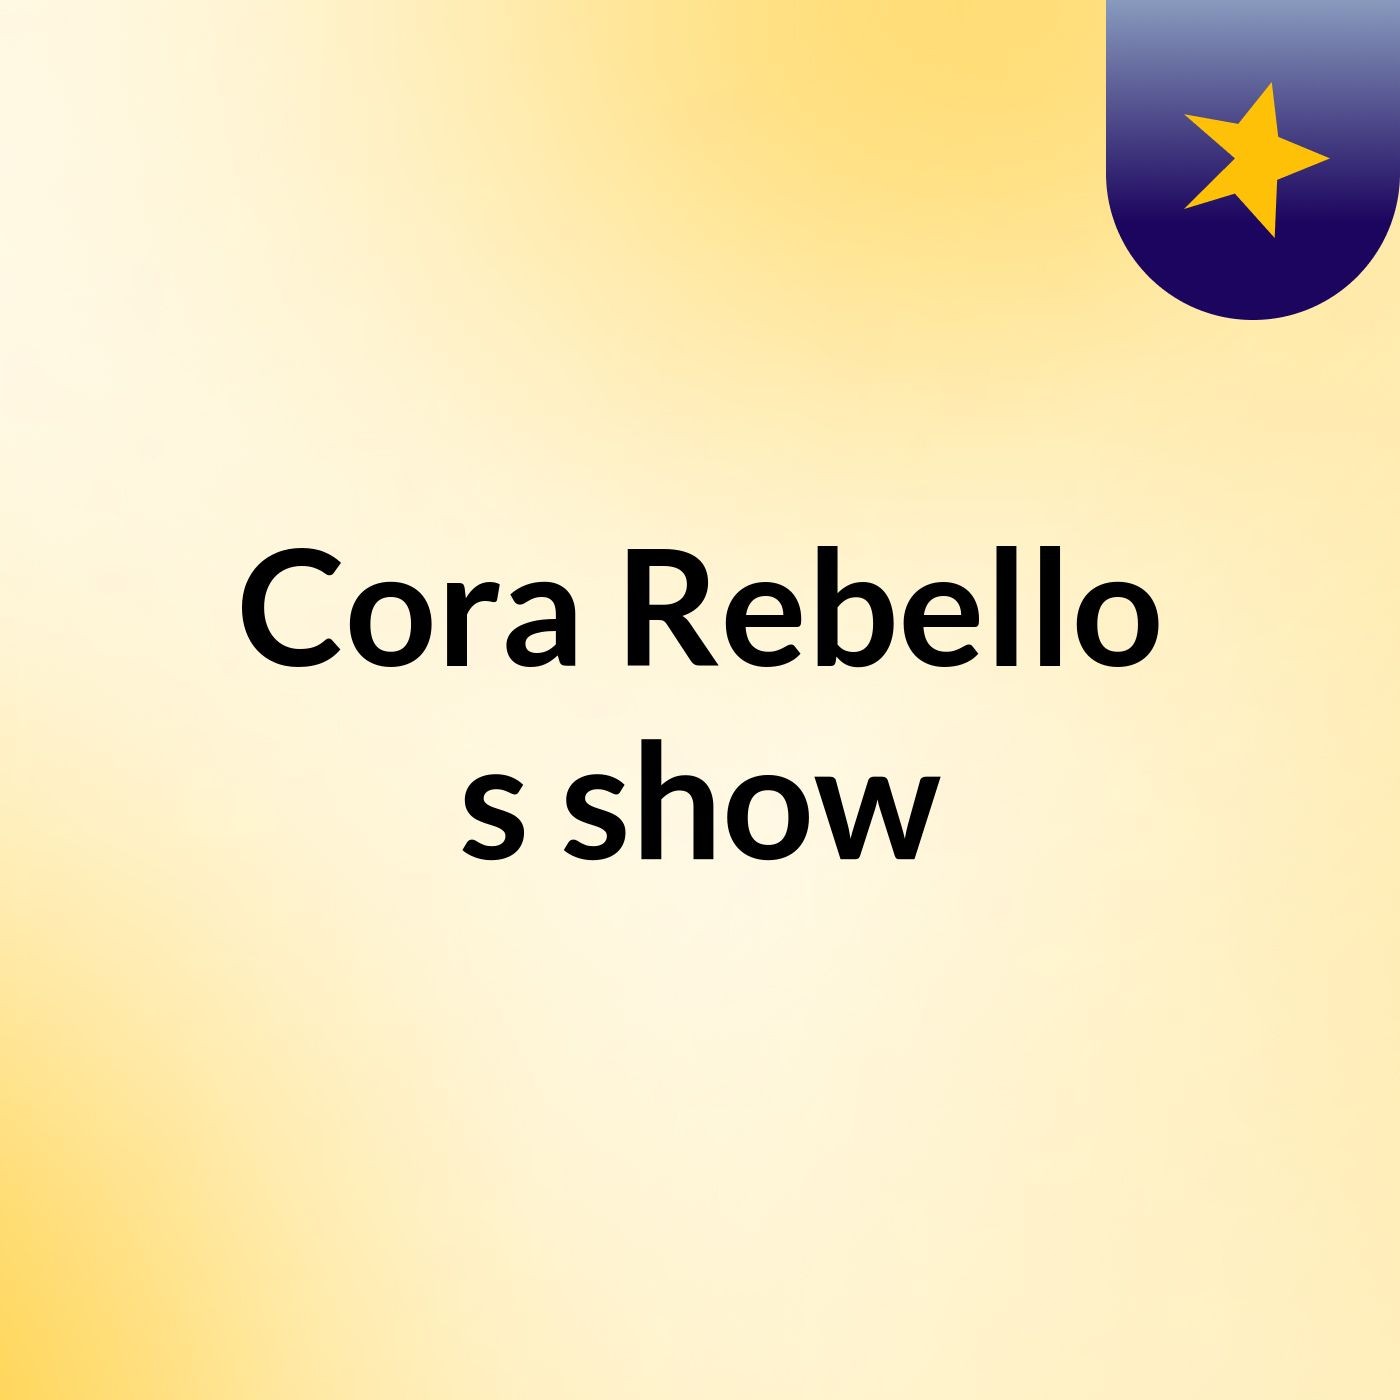 Cora Rebello's show